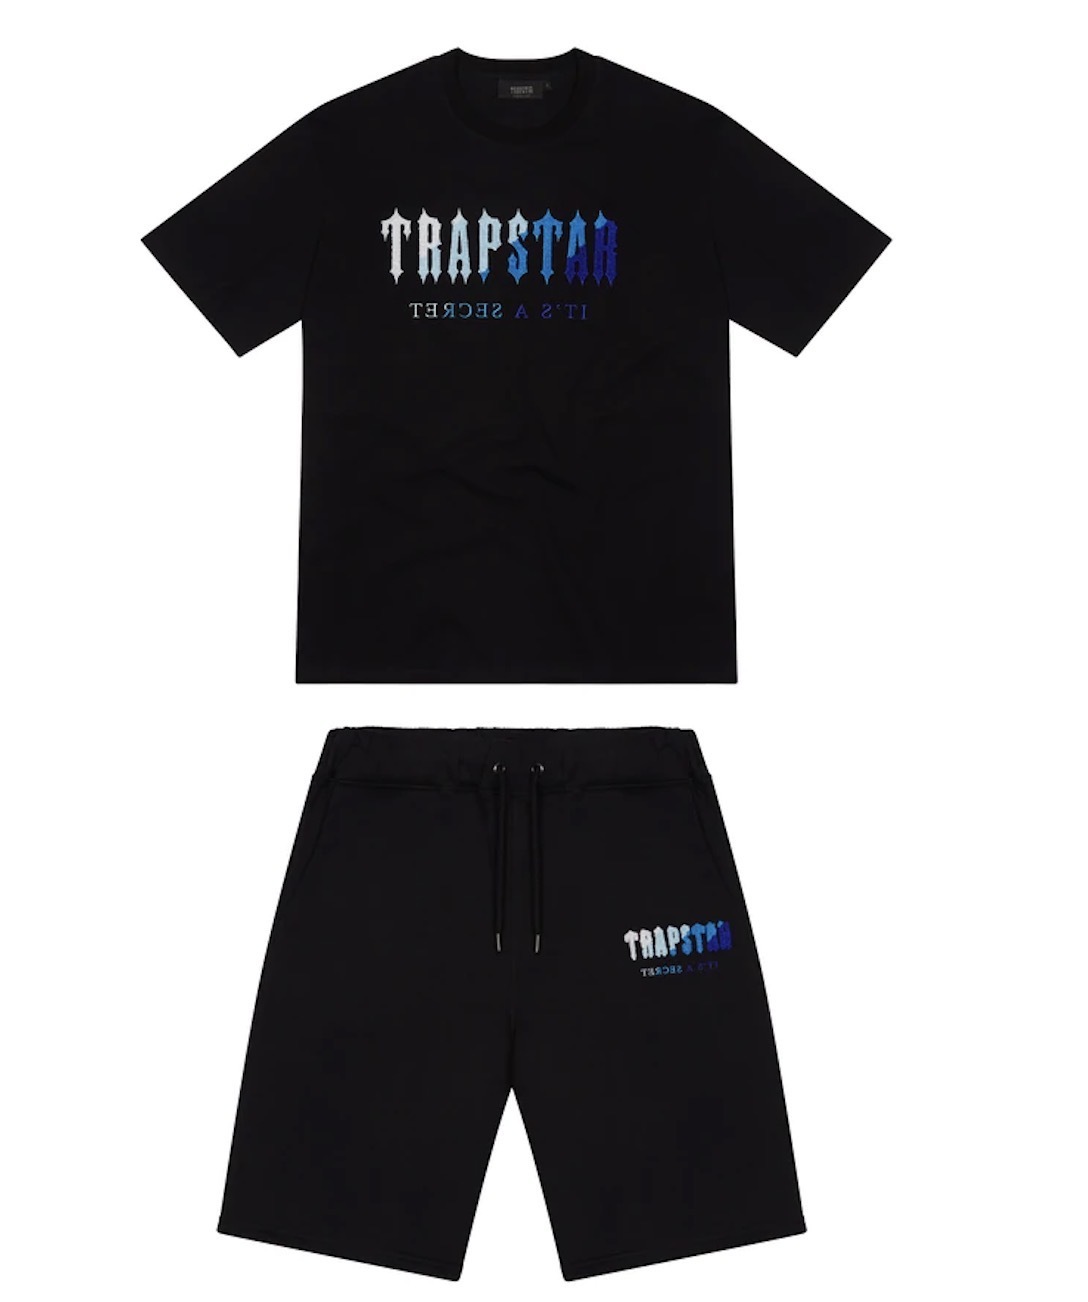 Мужская футболка Trapstar с коротким рукавом и принтом, спортивный костюм из синели, черный хлопок, Лондон, уличная одежда, S-2XL